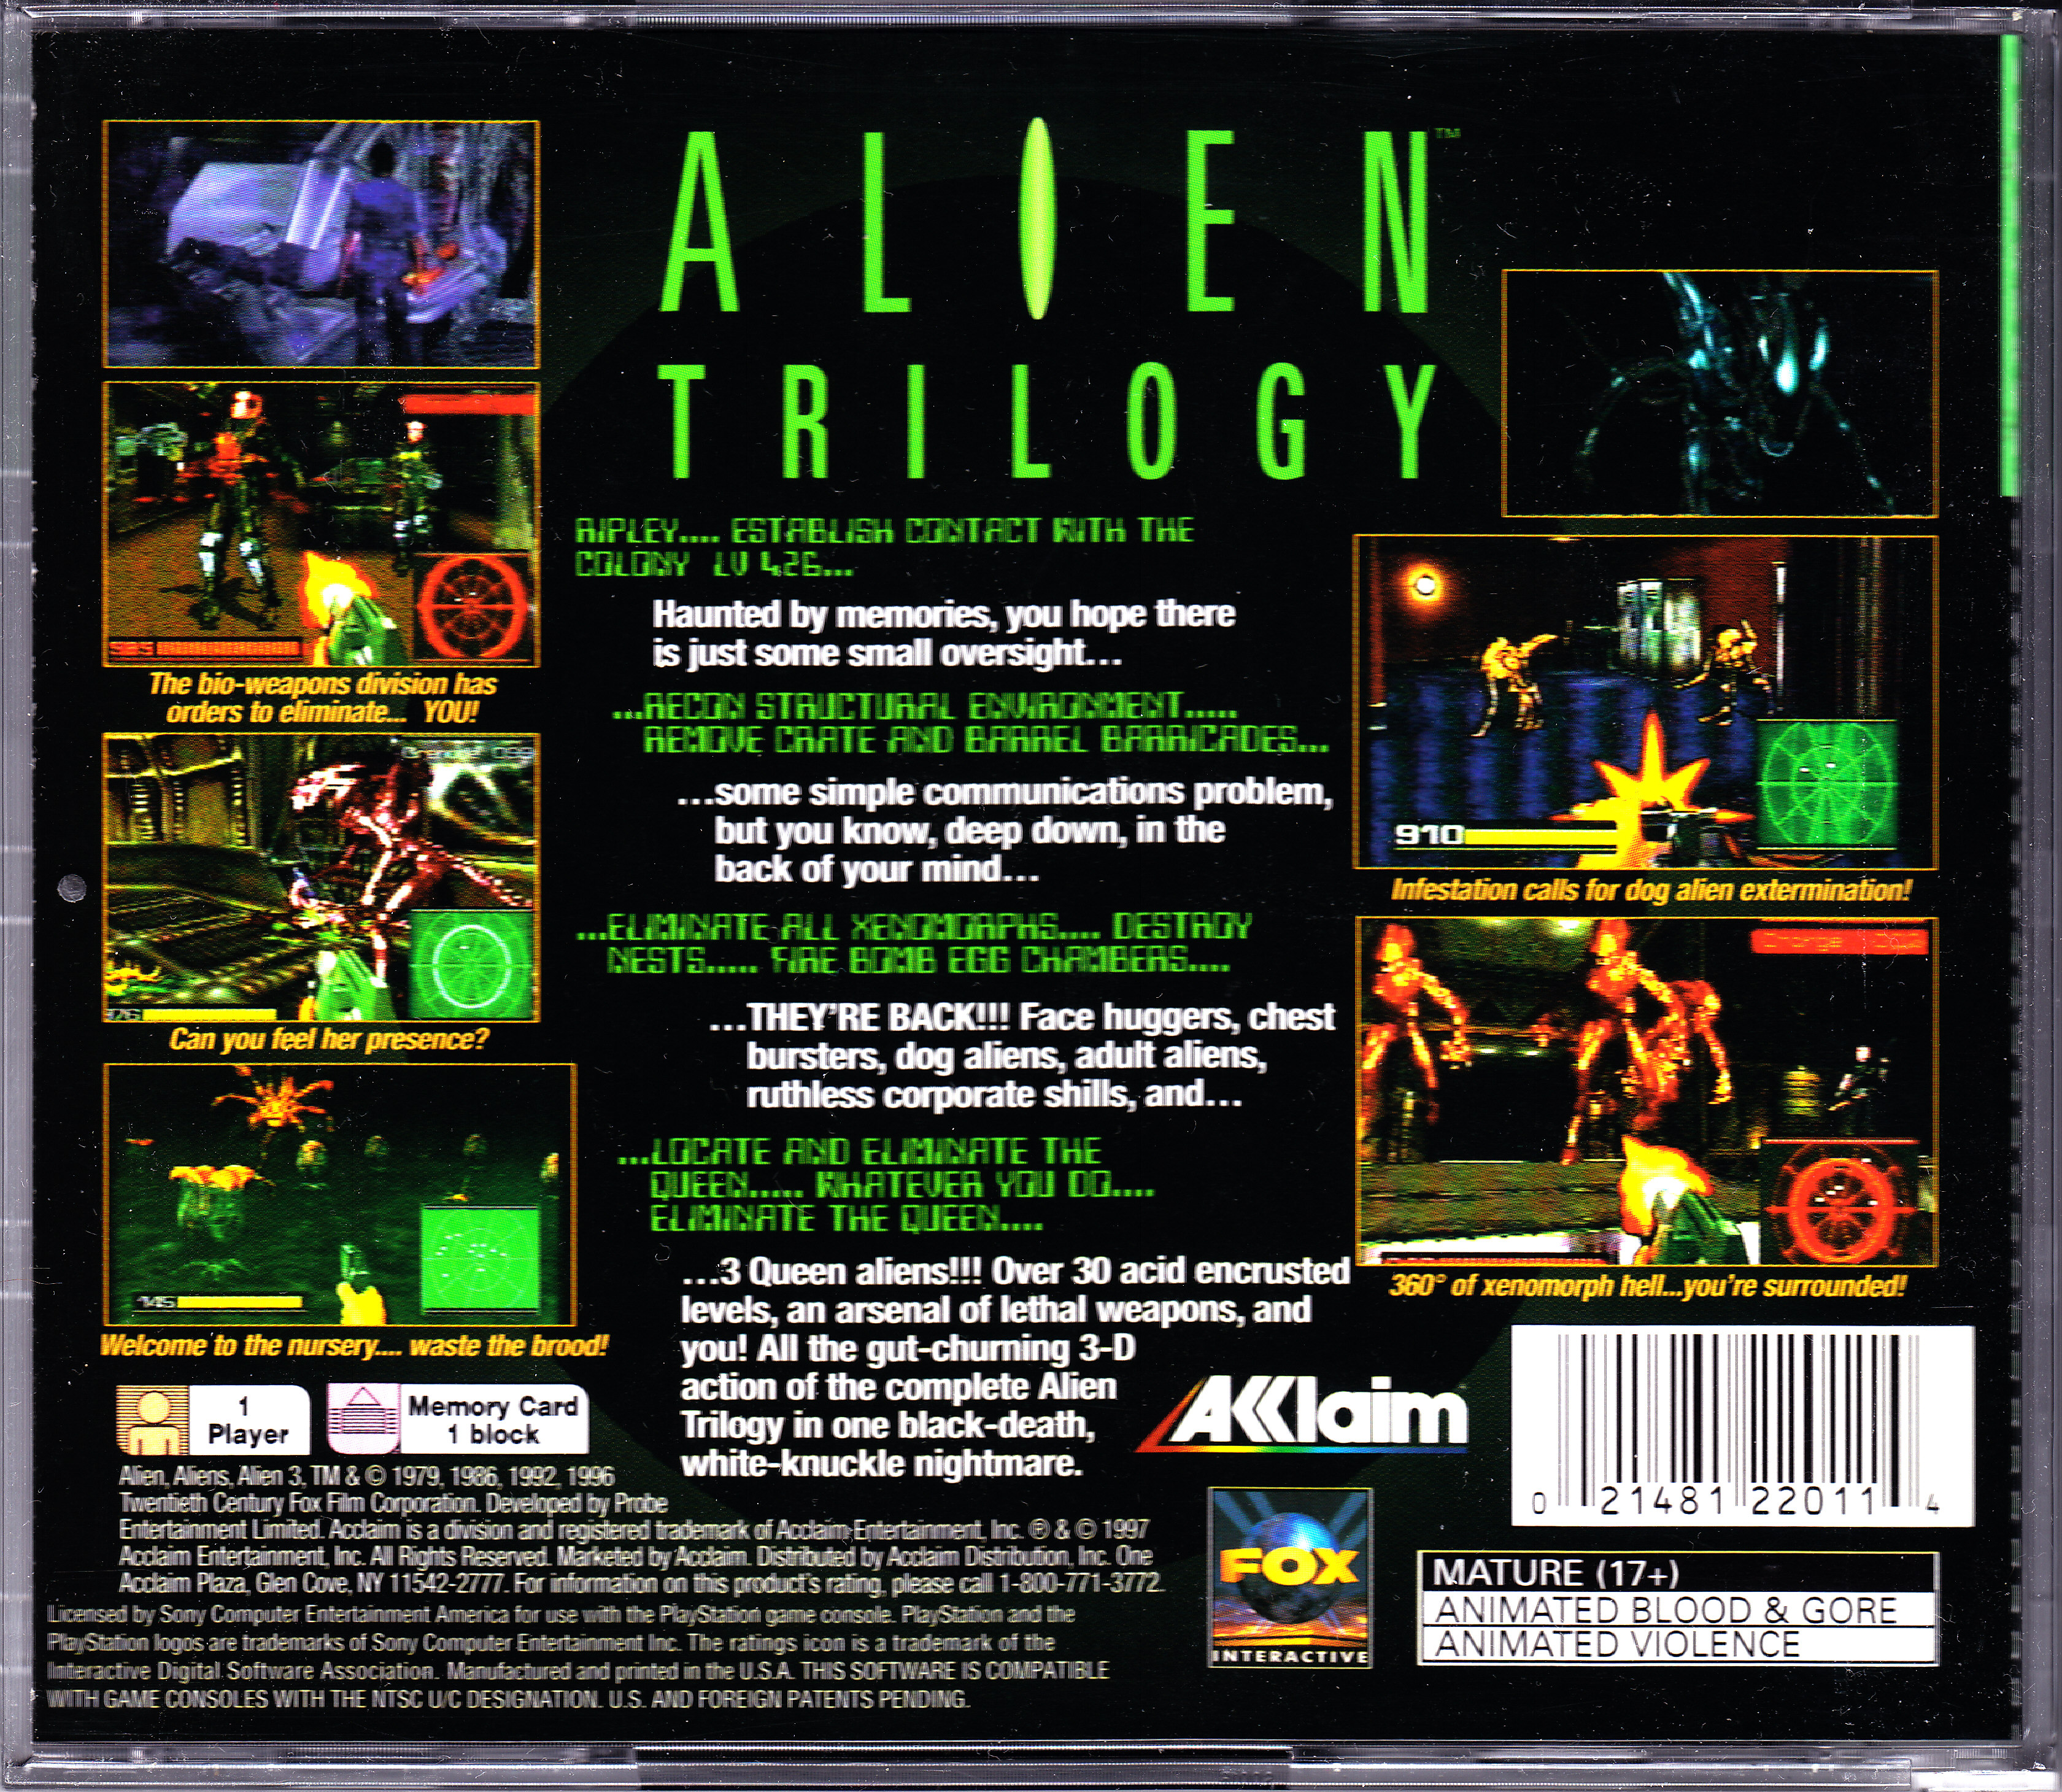 Alien trilogy. Ps1 2 в 1 Alien Trilogy. Alien Trilogy ps1. Alien Trilogy ps1 обложка. Alien Trilogy 1996.